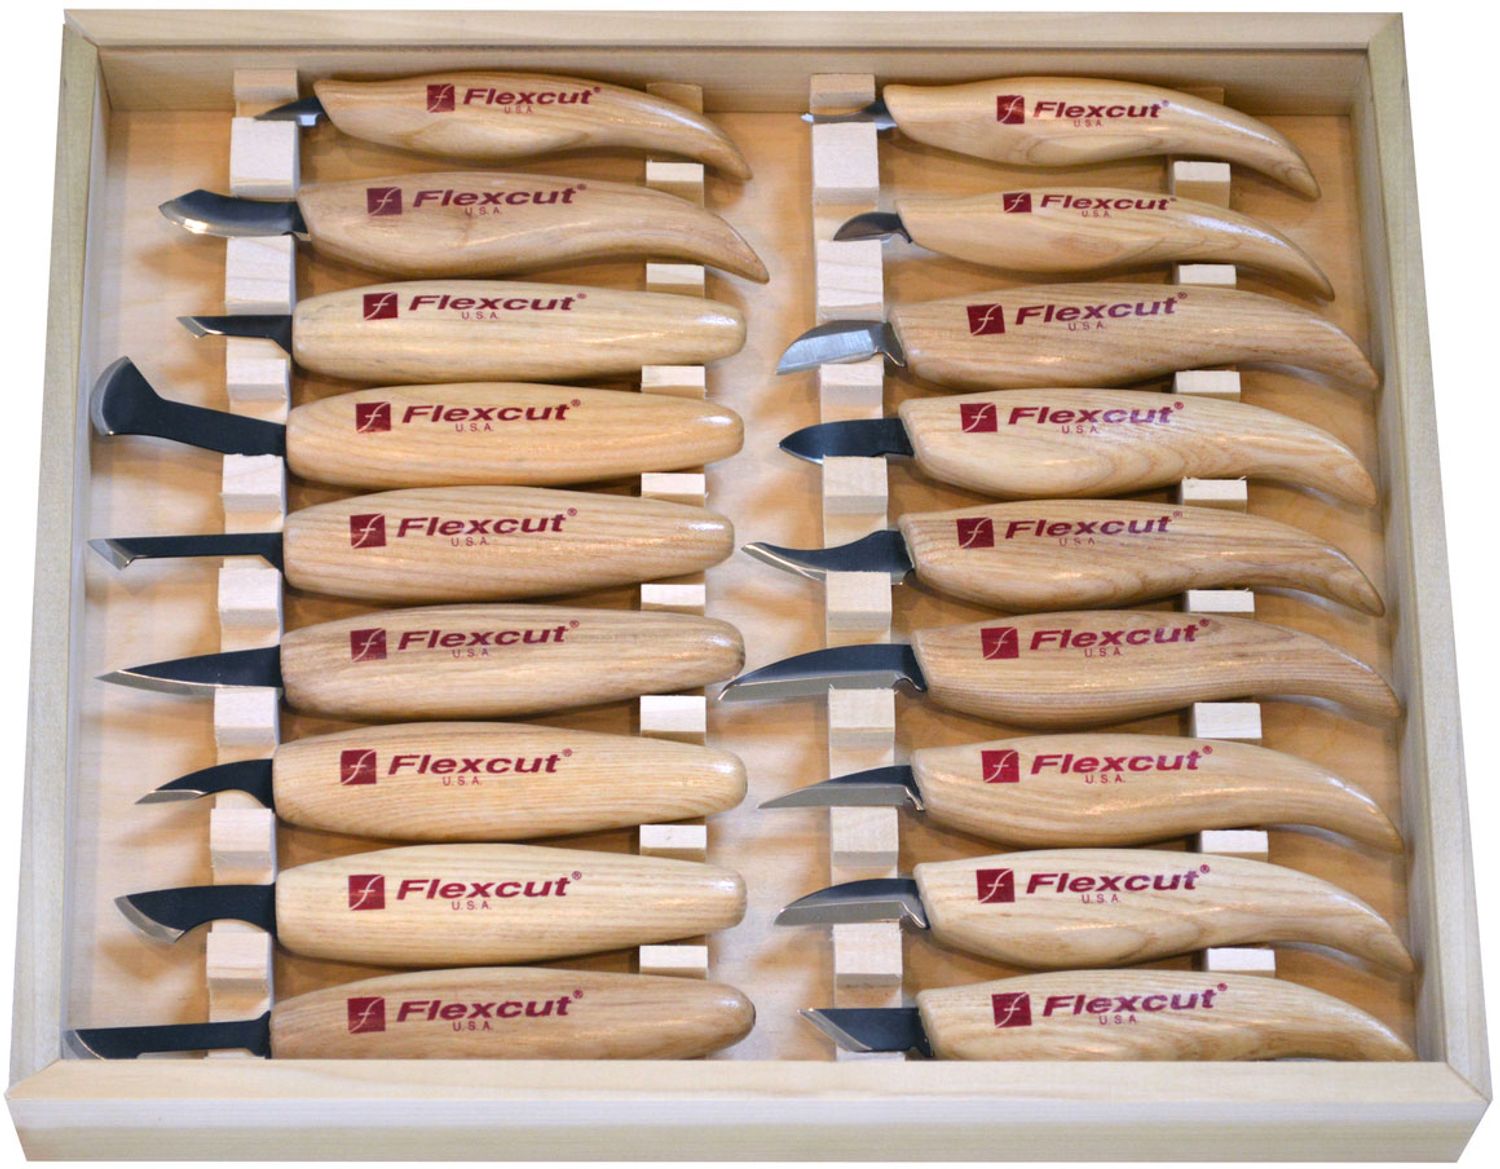 Sharpening Your Flexcut Tools - Flexcut Tool Company